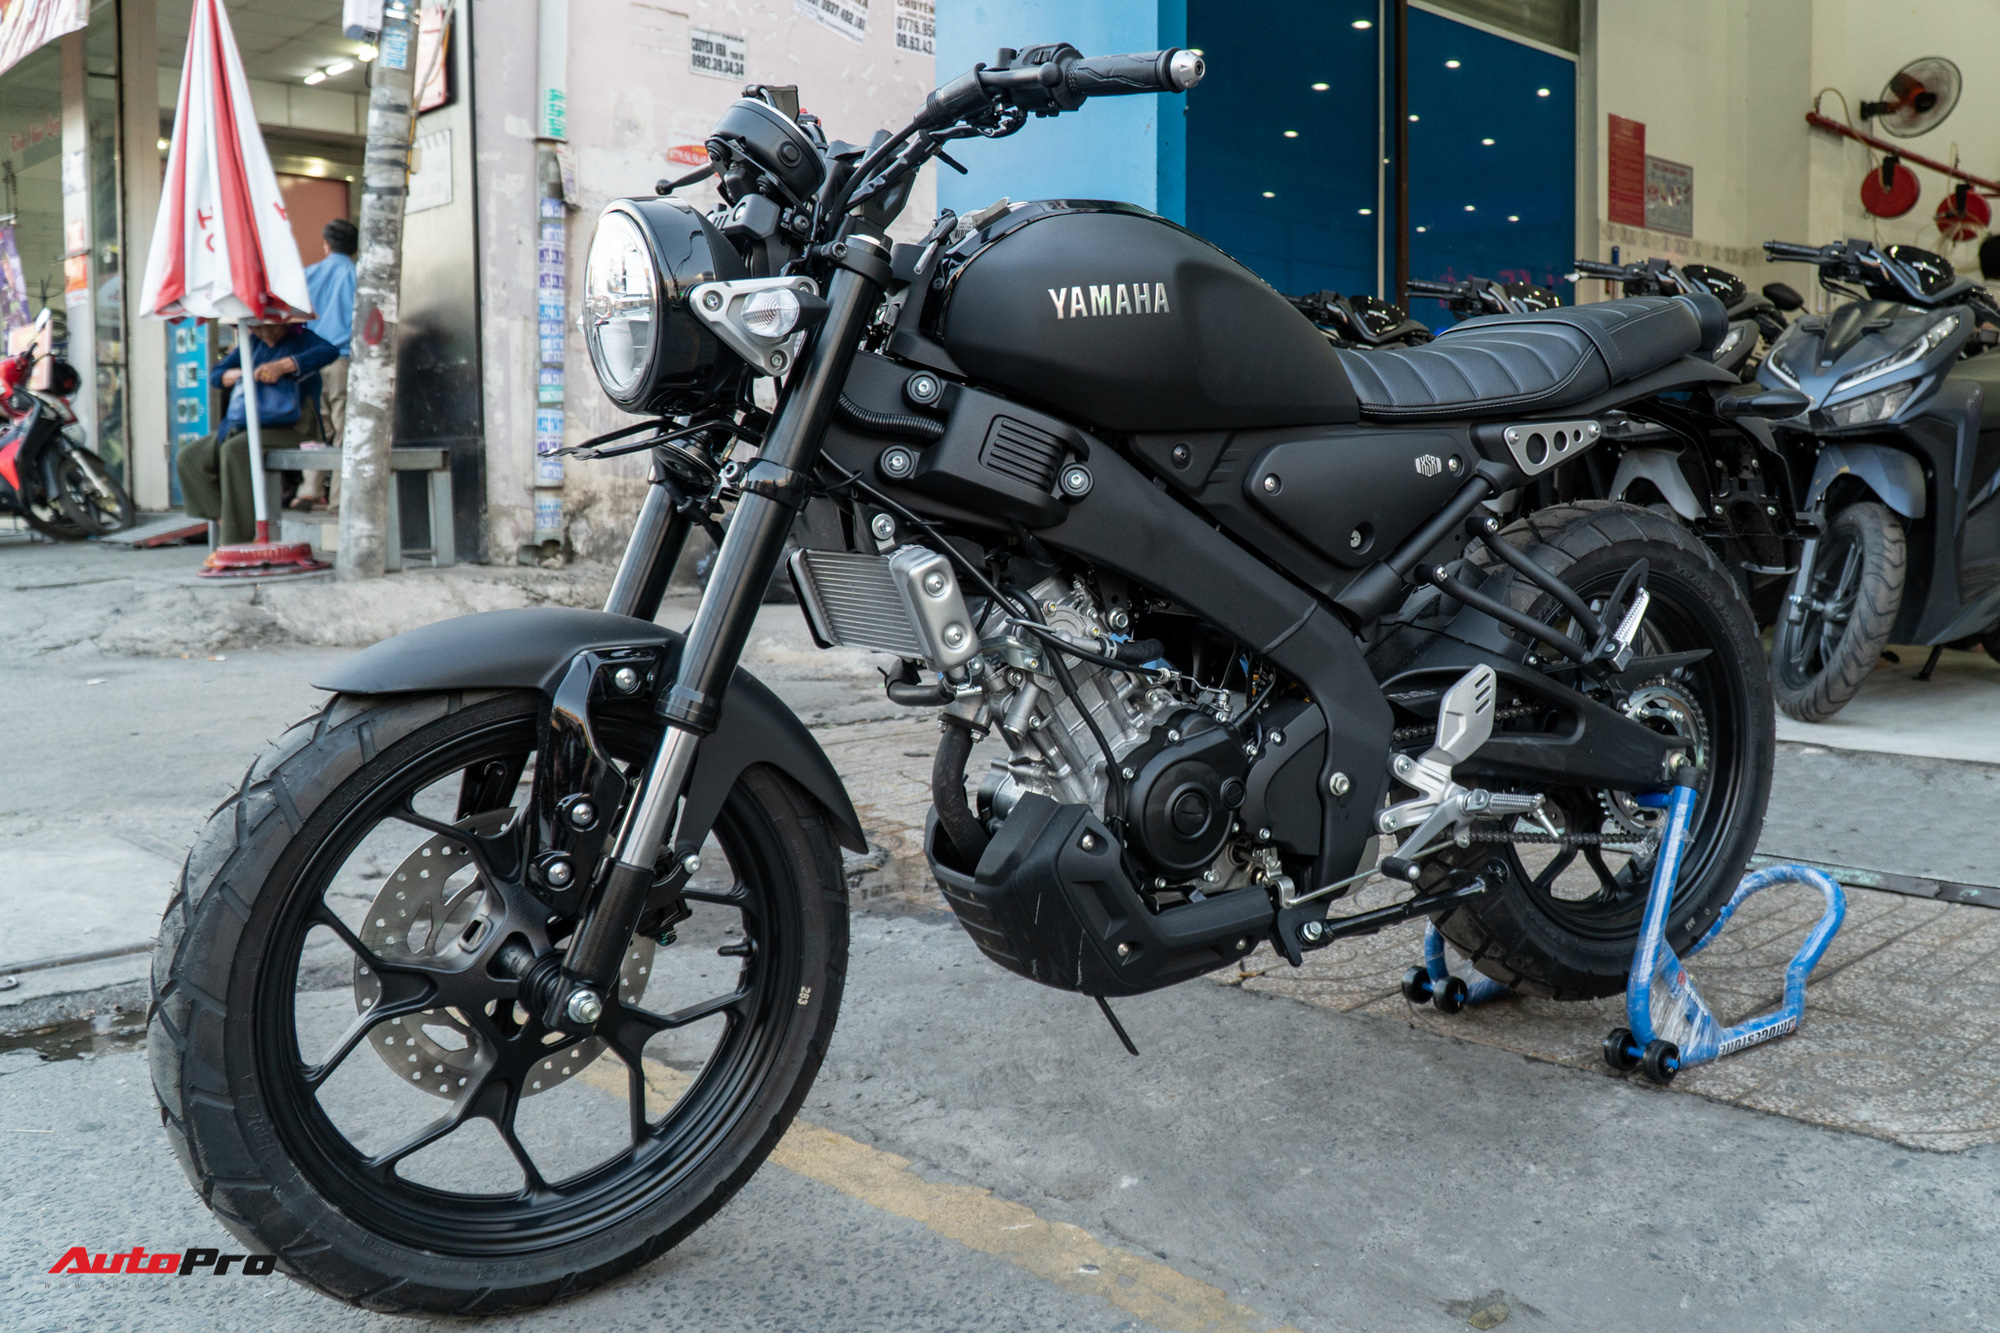 Yamaha R15 mẫu xe tay côn 155cc đang gây sốt trên thị trường